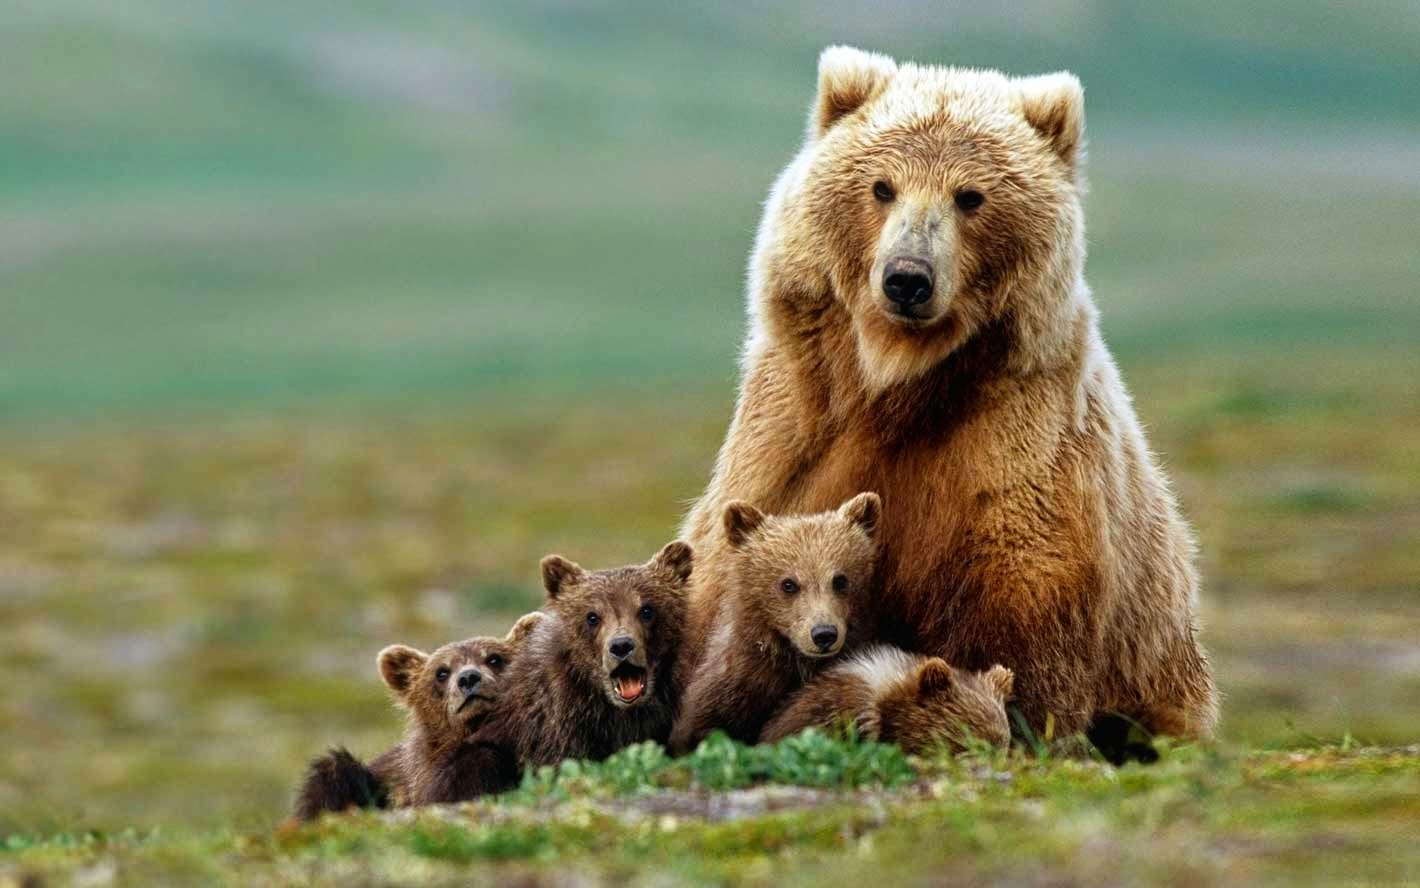 Bear Mother & Kids Love